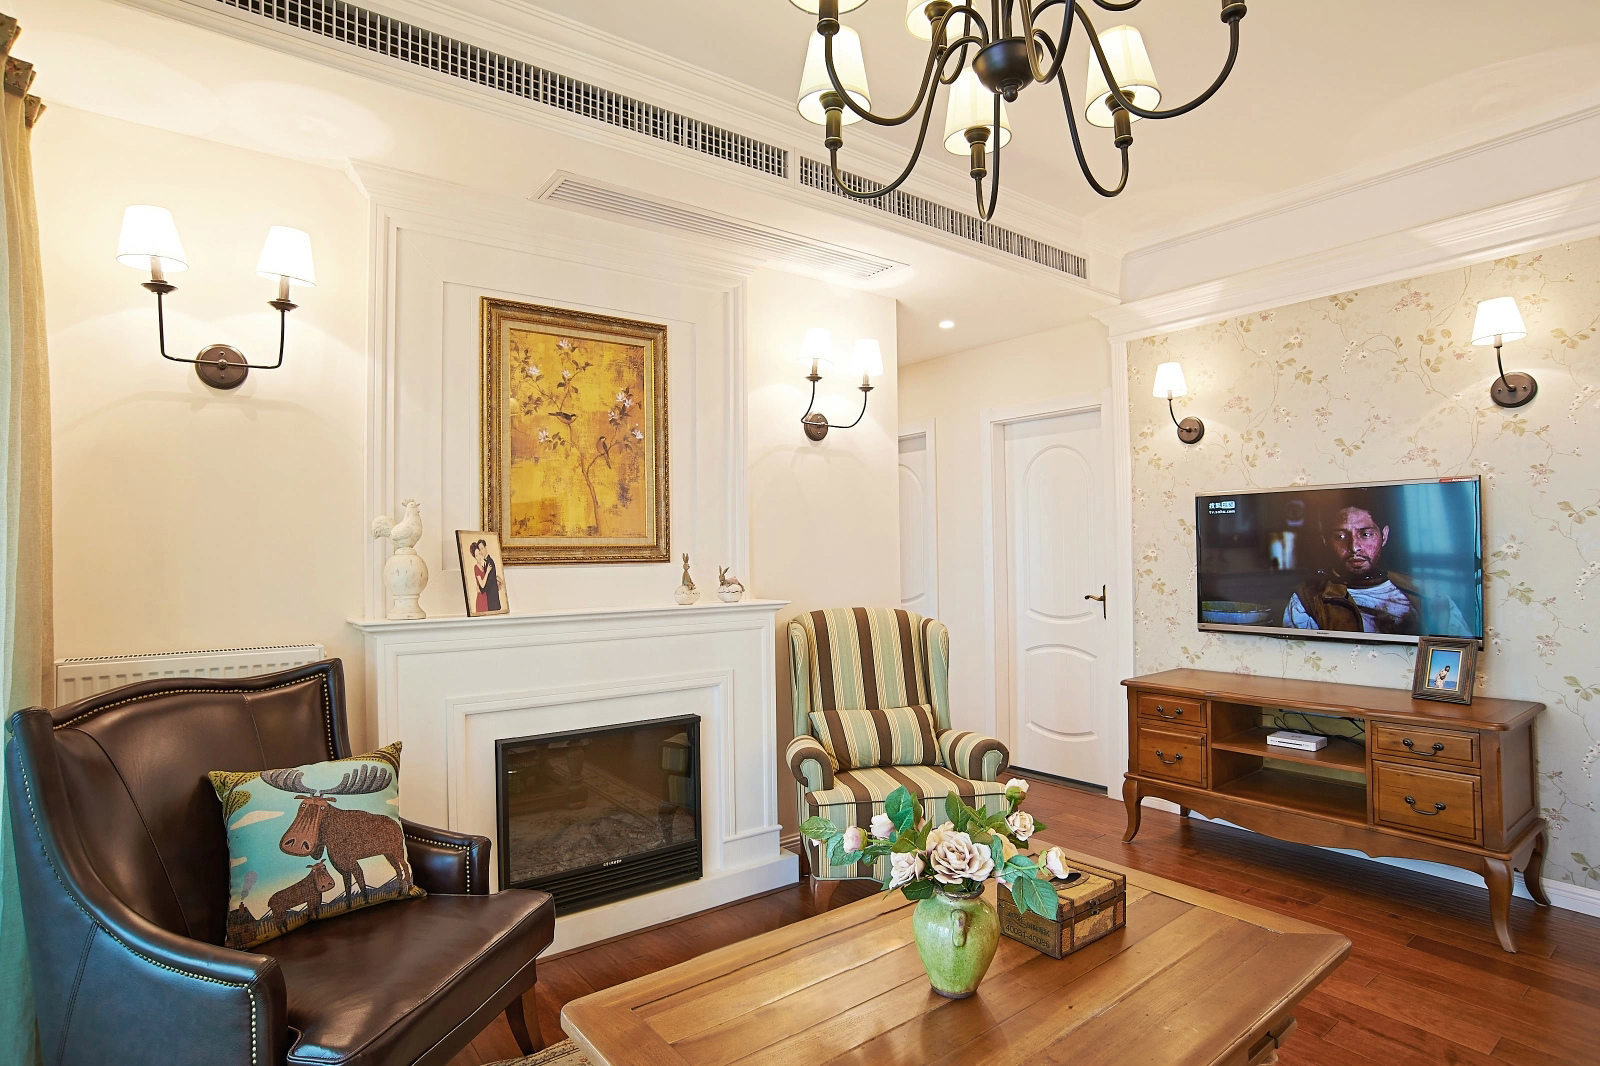 客厅简单的素色墙面，少量的墙面装饰，自然的绿色植物，以及布艺沙发和白色，构成了这个舒适现代简约之感